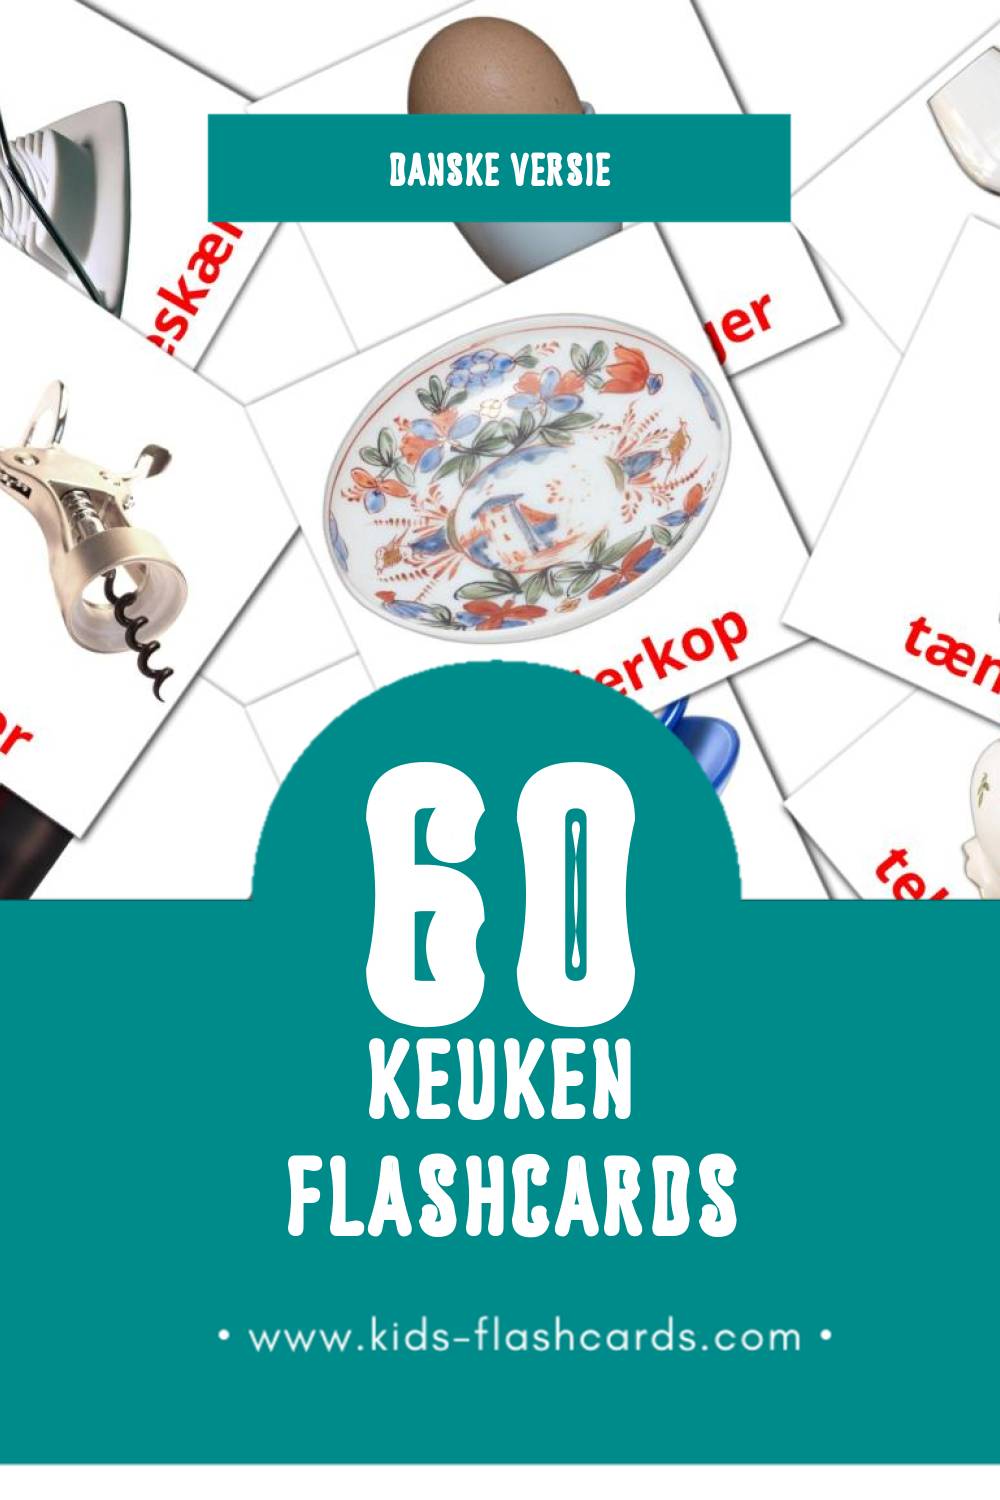 Visuele Køkken Flashcards voor Kleuters (60 kaarten in het Dansk)